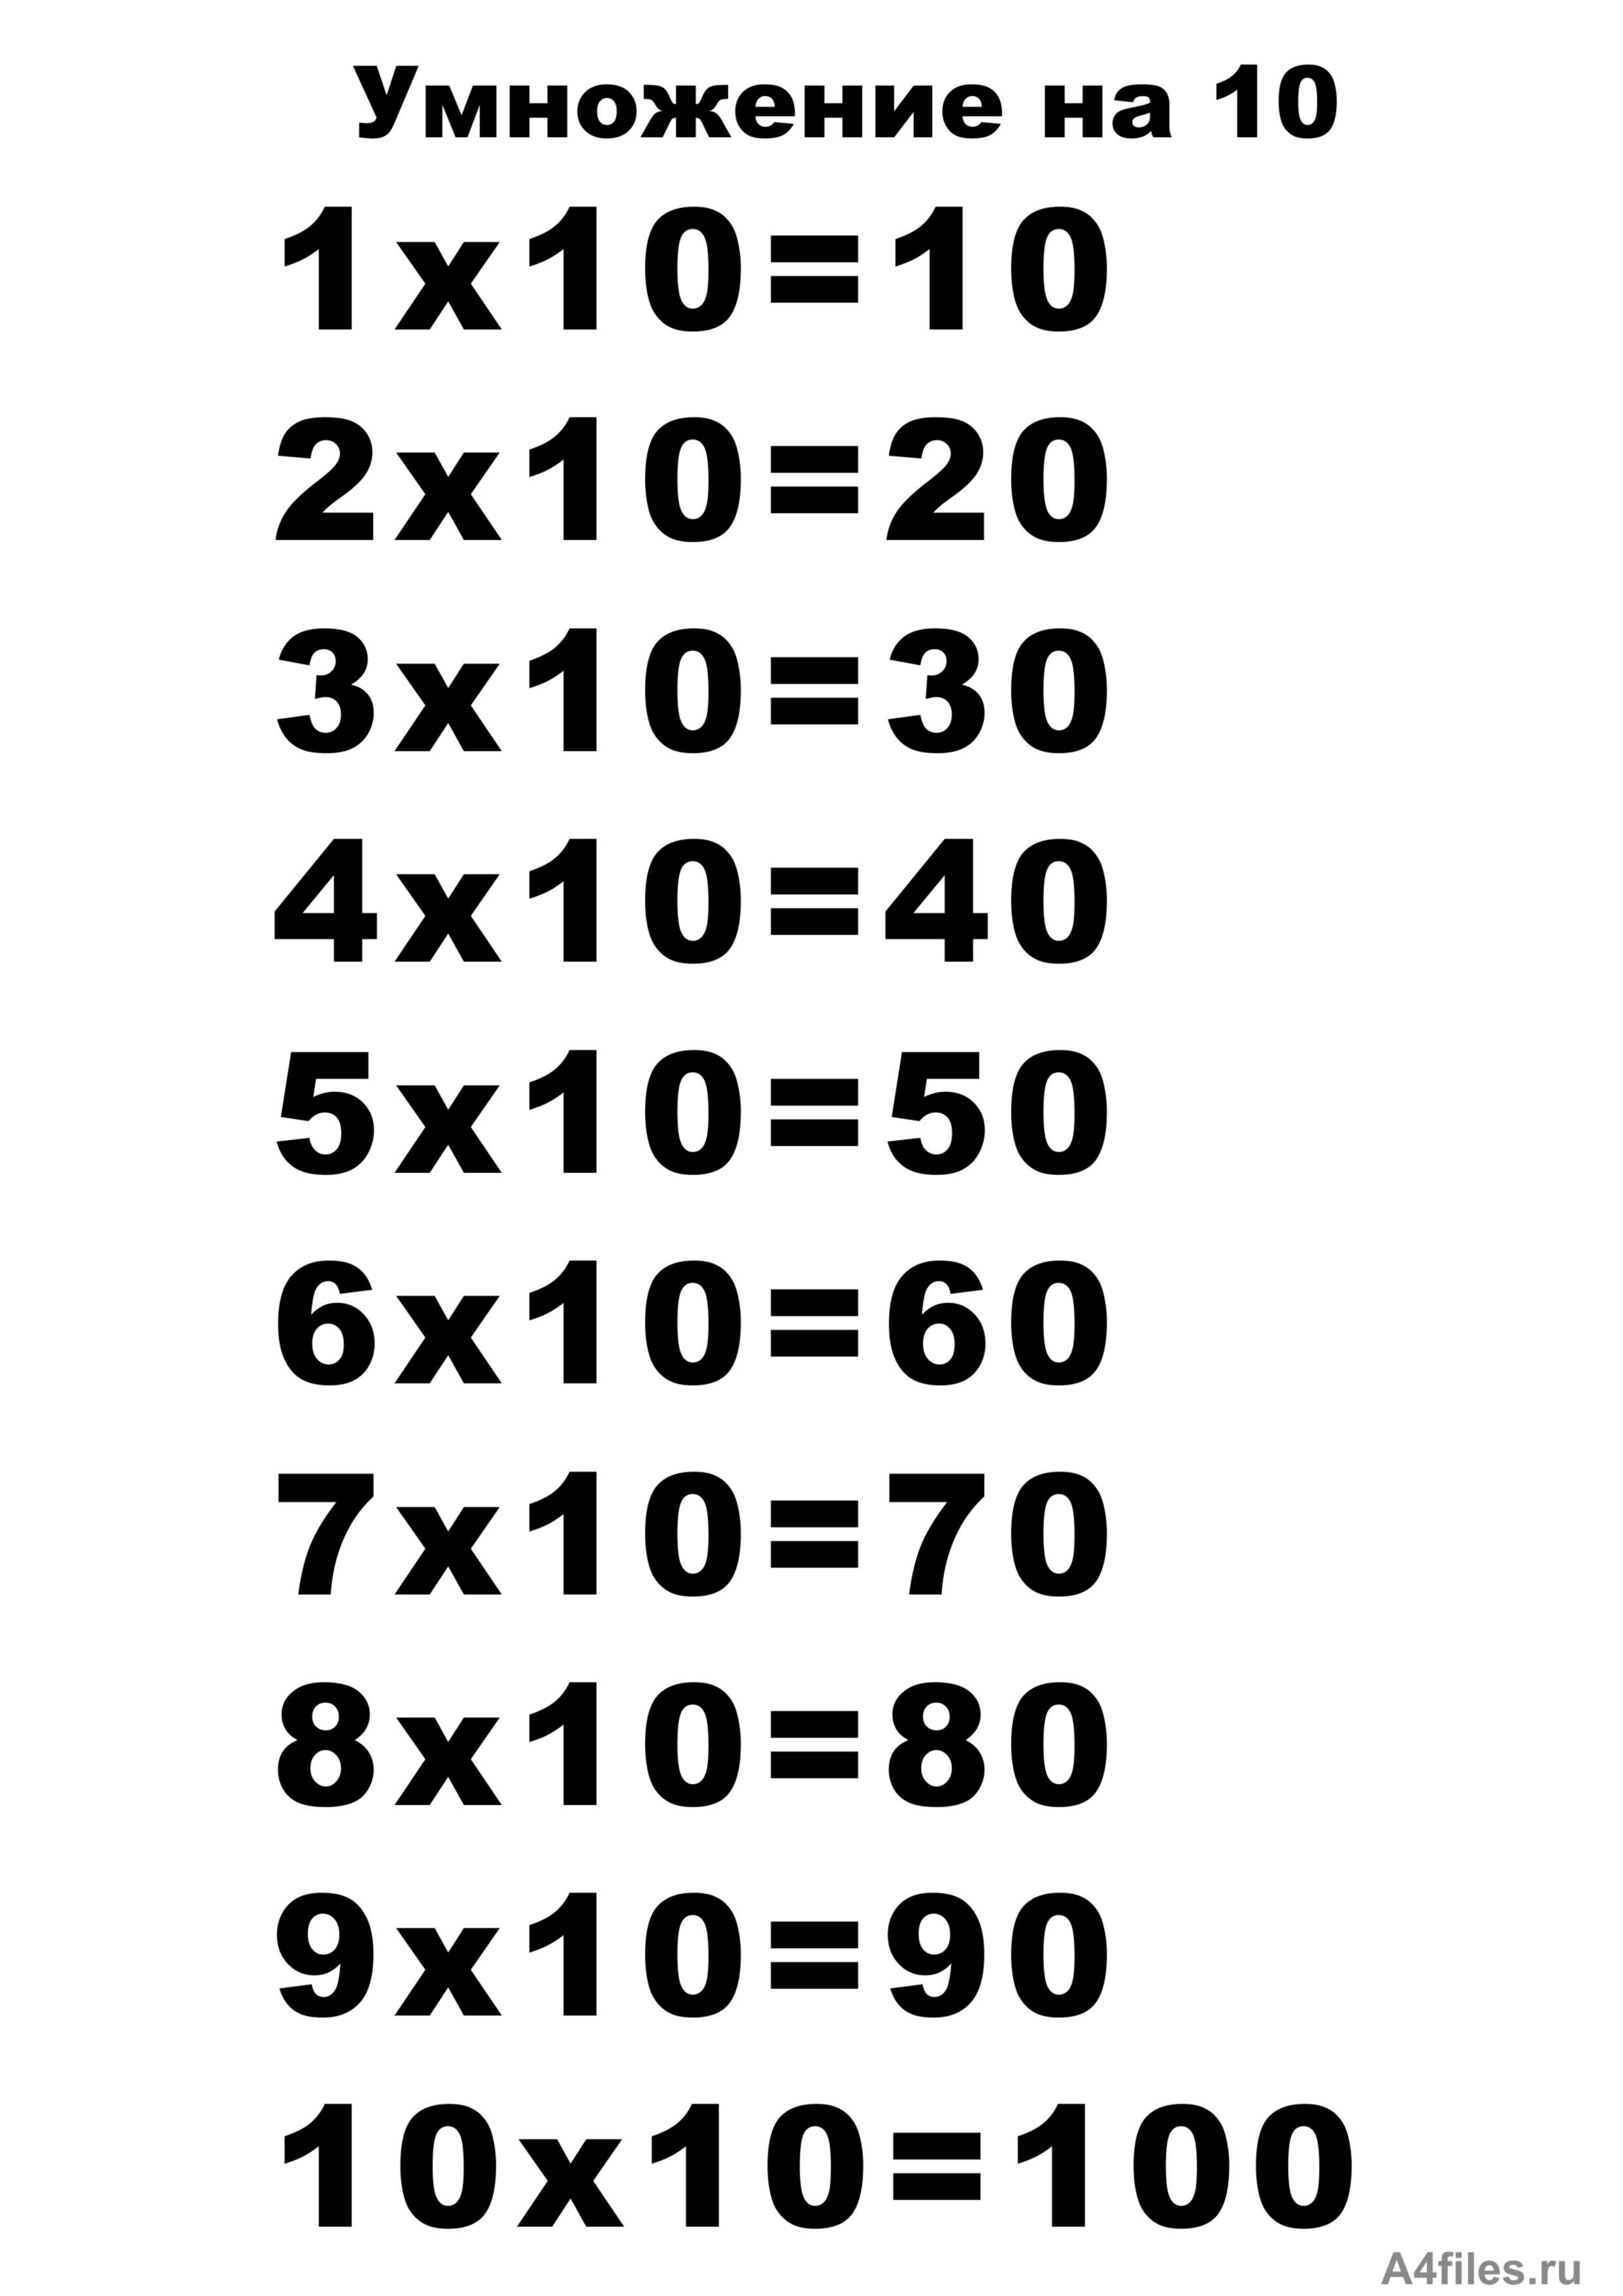 15 умножить на 10. Таблицв умнажения на "10. Таблица умножения на 10 распечатать а4 Формат. Таблица на 10. Т͇а͇б͇л͇и͇ц͇а͇ У͇М͇Н͇О͇Ж͇Е͇Н͇И͇Й͇.